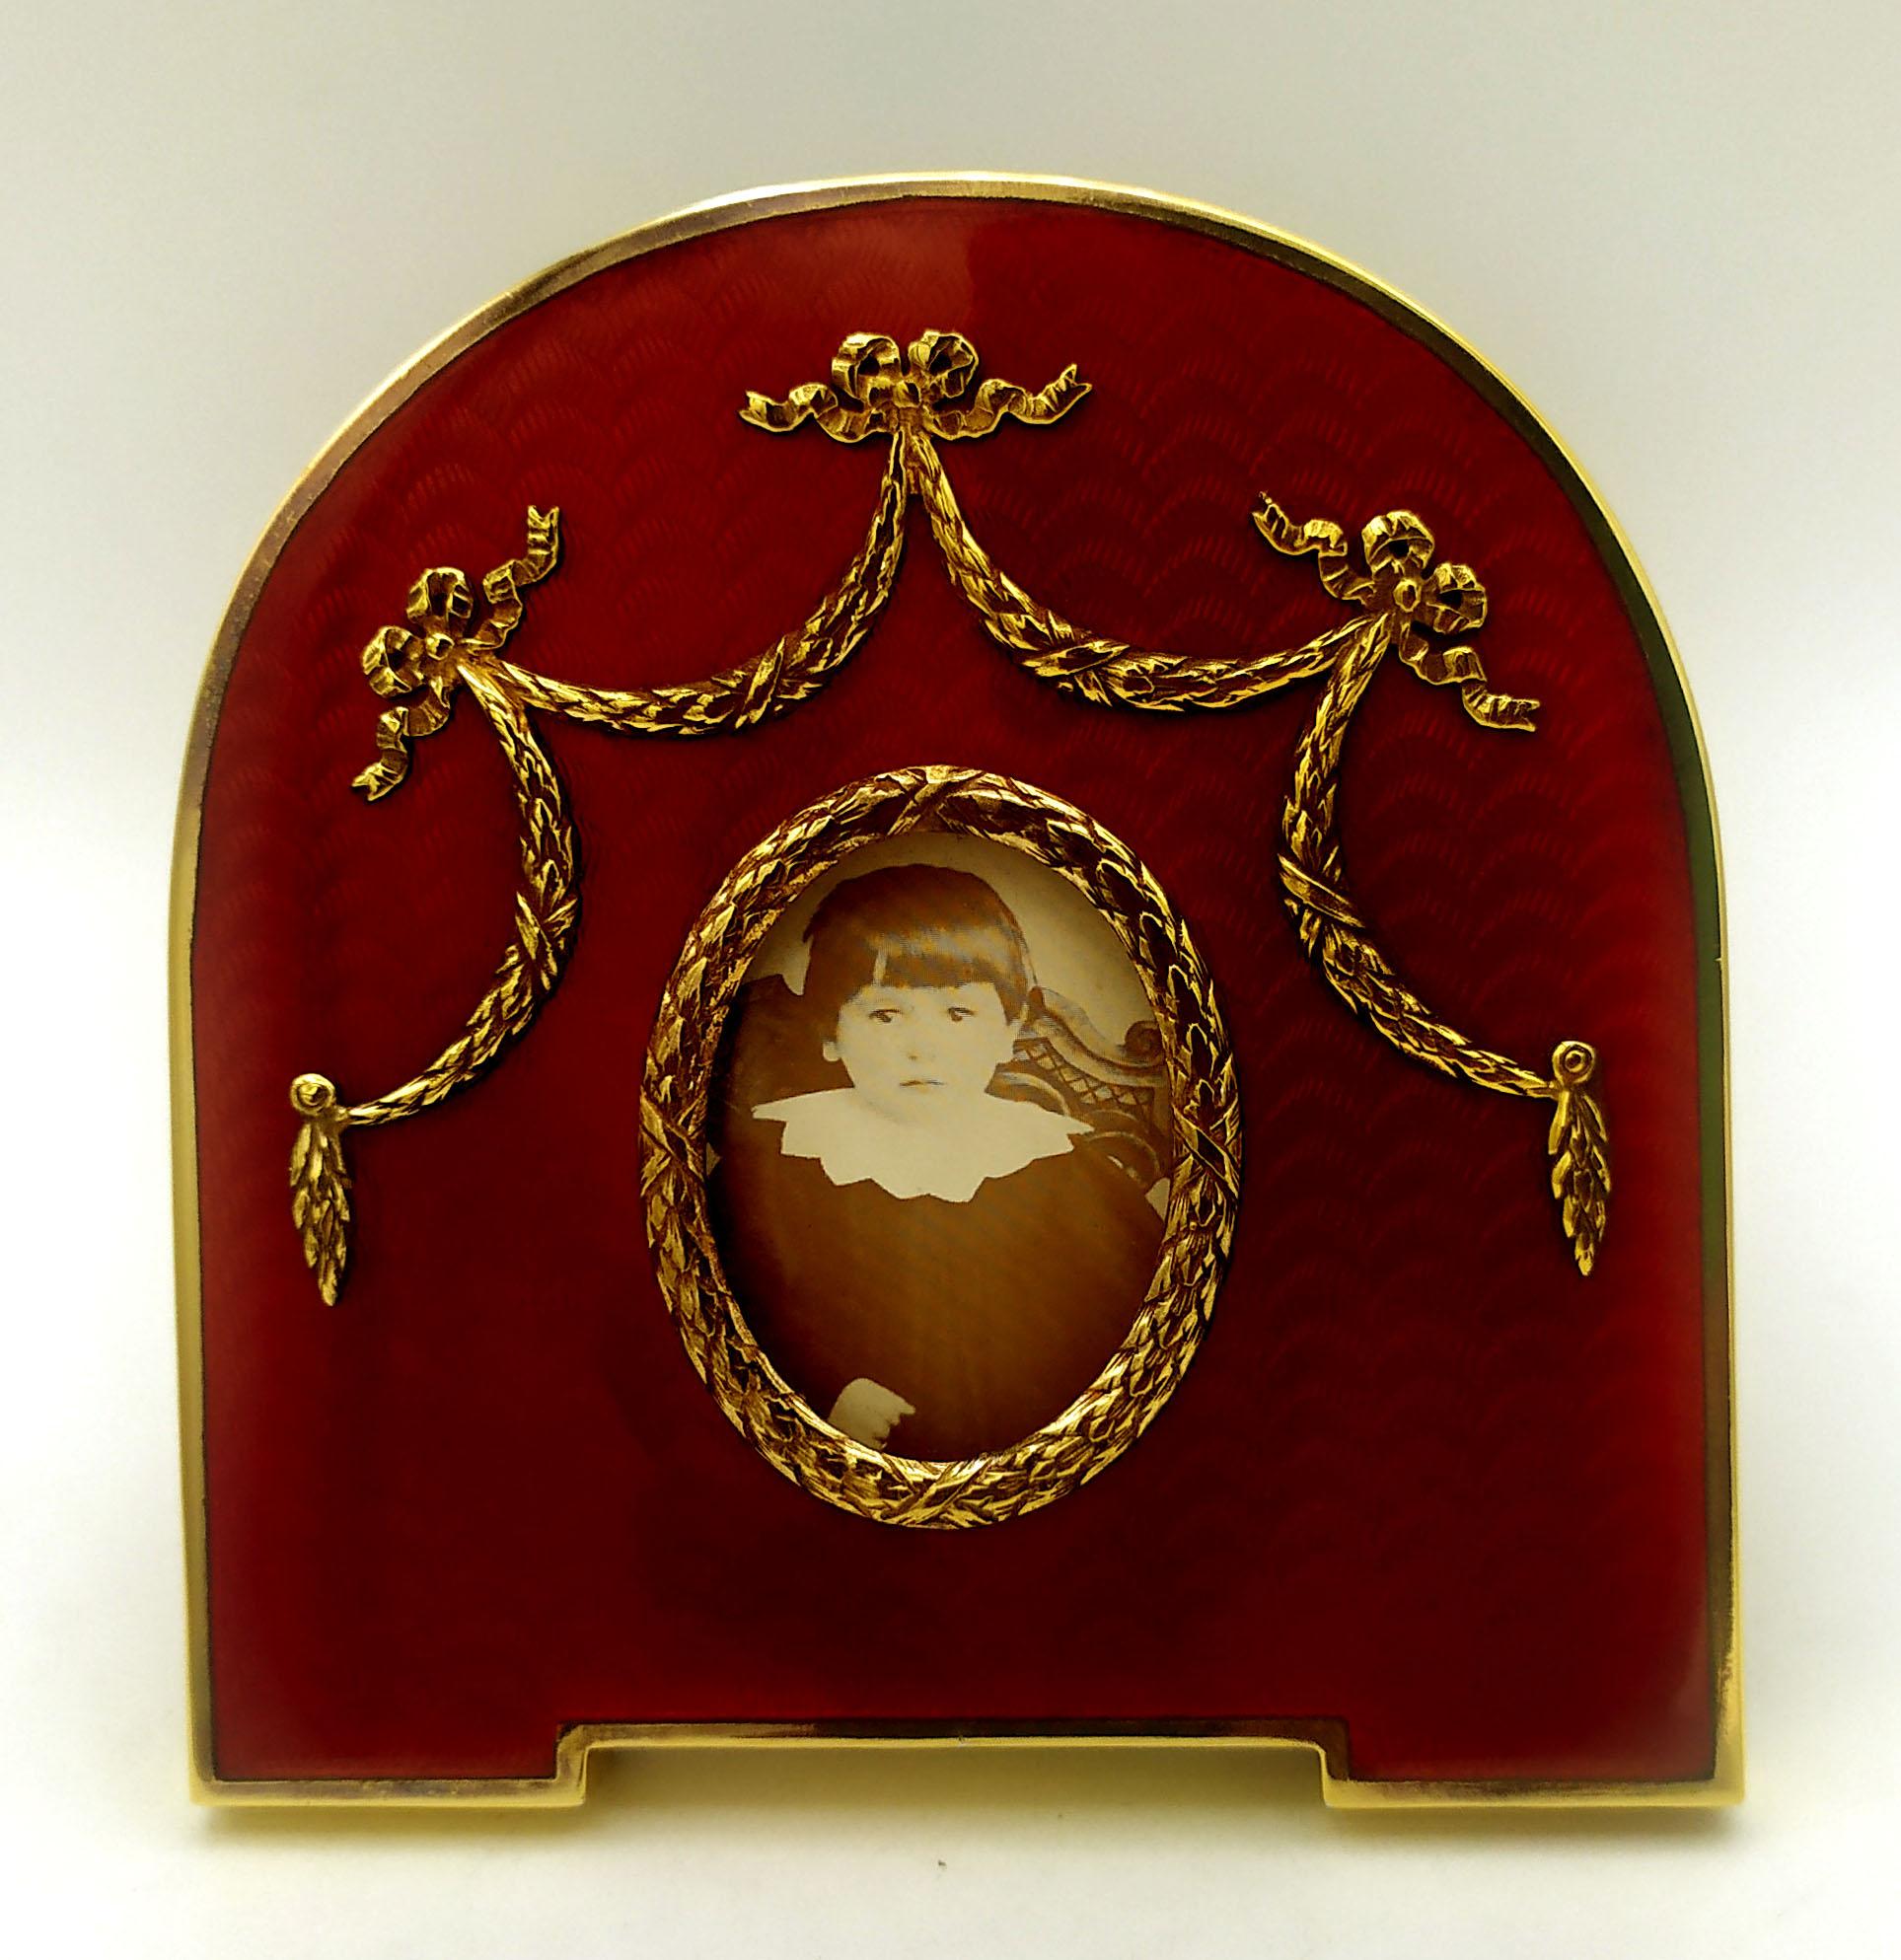 Ovaler Fotorahmen aus vergoldetem 925/1000er Sterlingsilber mit durchscheinendem, gebranntem Email auf Guillochè und Ornamenten im Louis XVI-Stil des französischen Empire. Außenmaße cm. 13.5 x 11. Innen oval cm. 3.2 x 4.2. Gewicht gr. 158. Entworfen